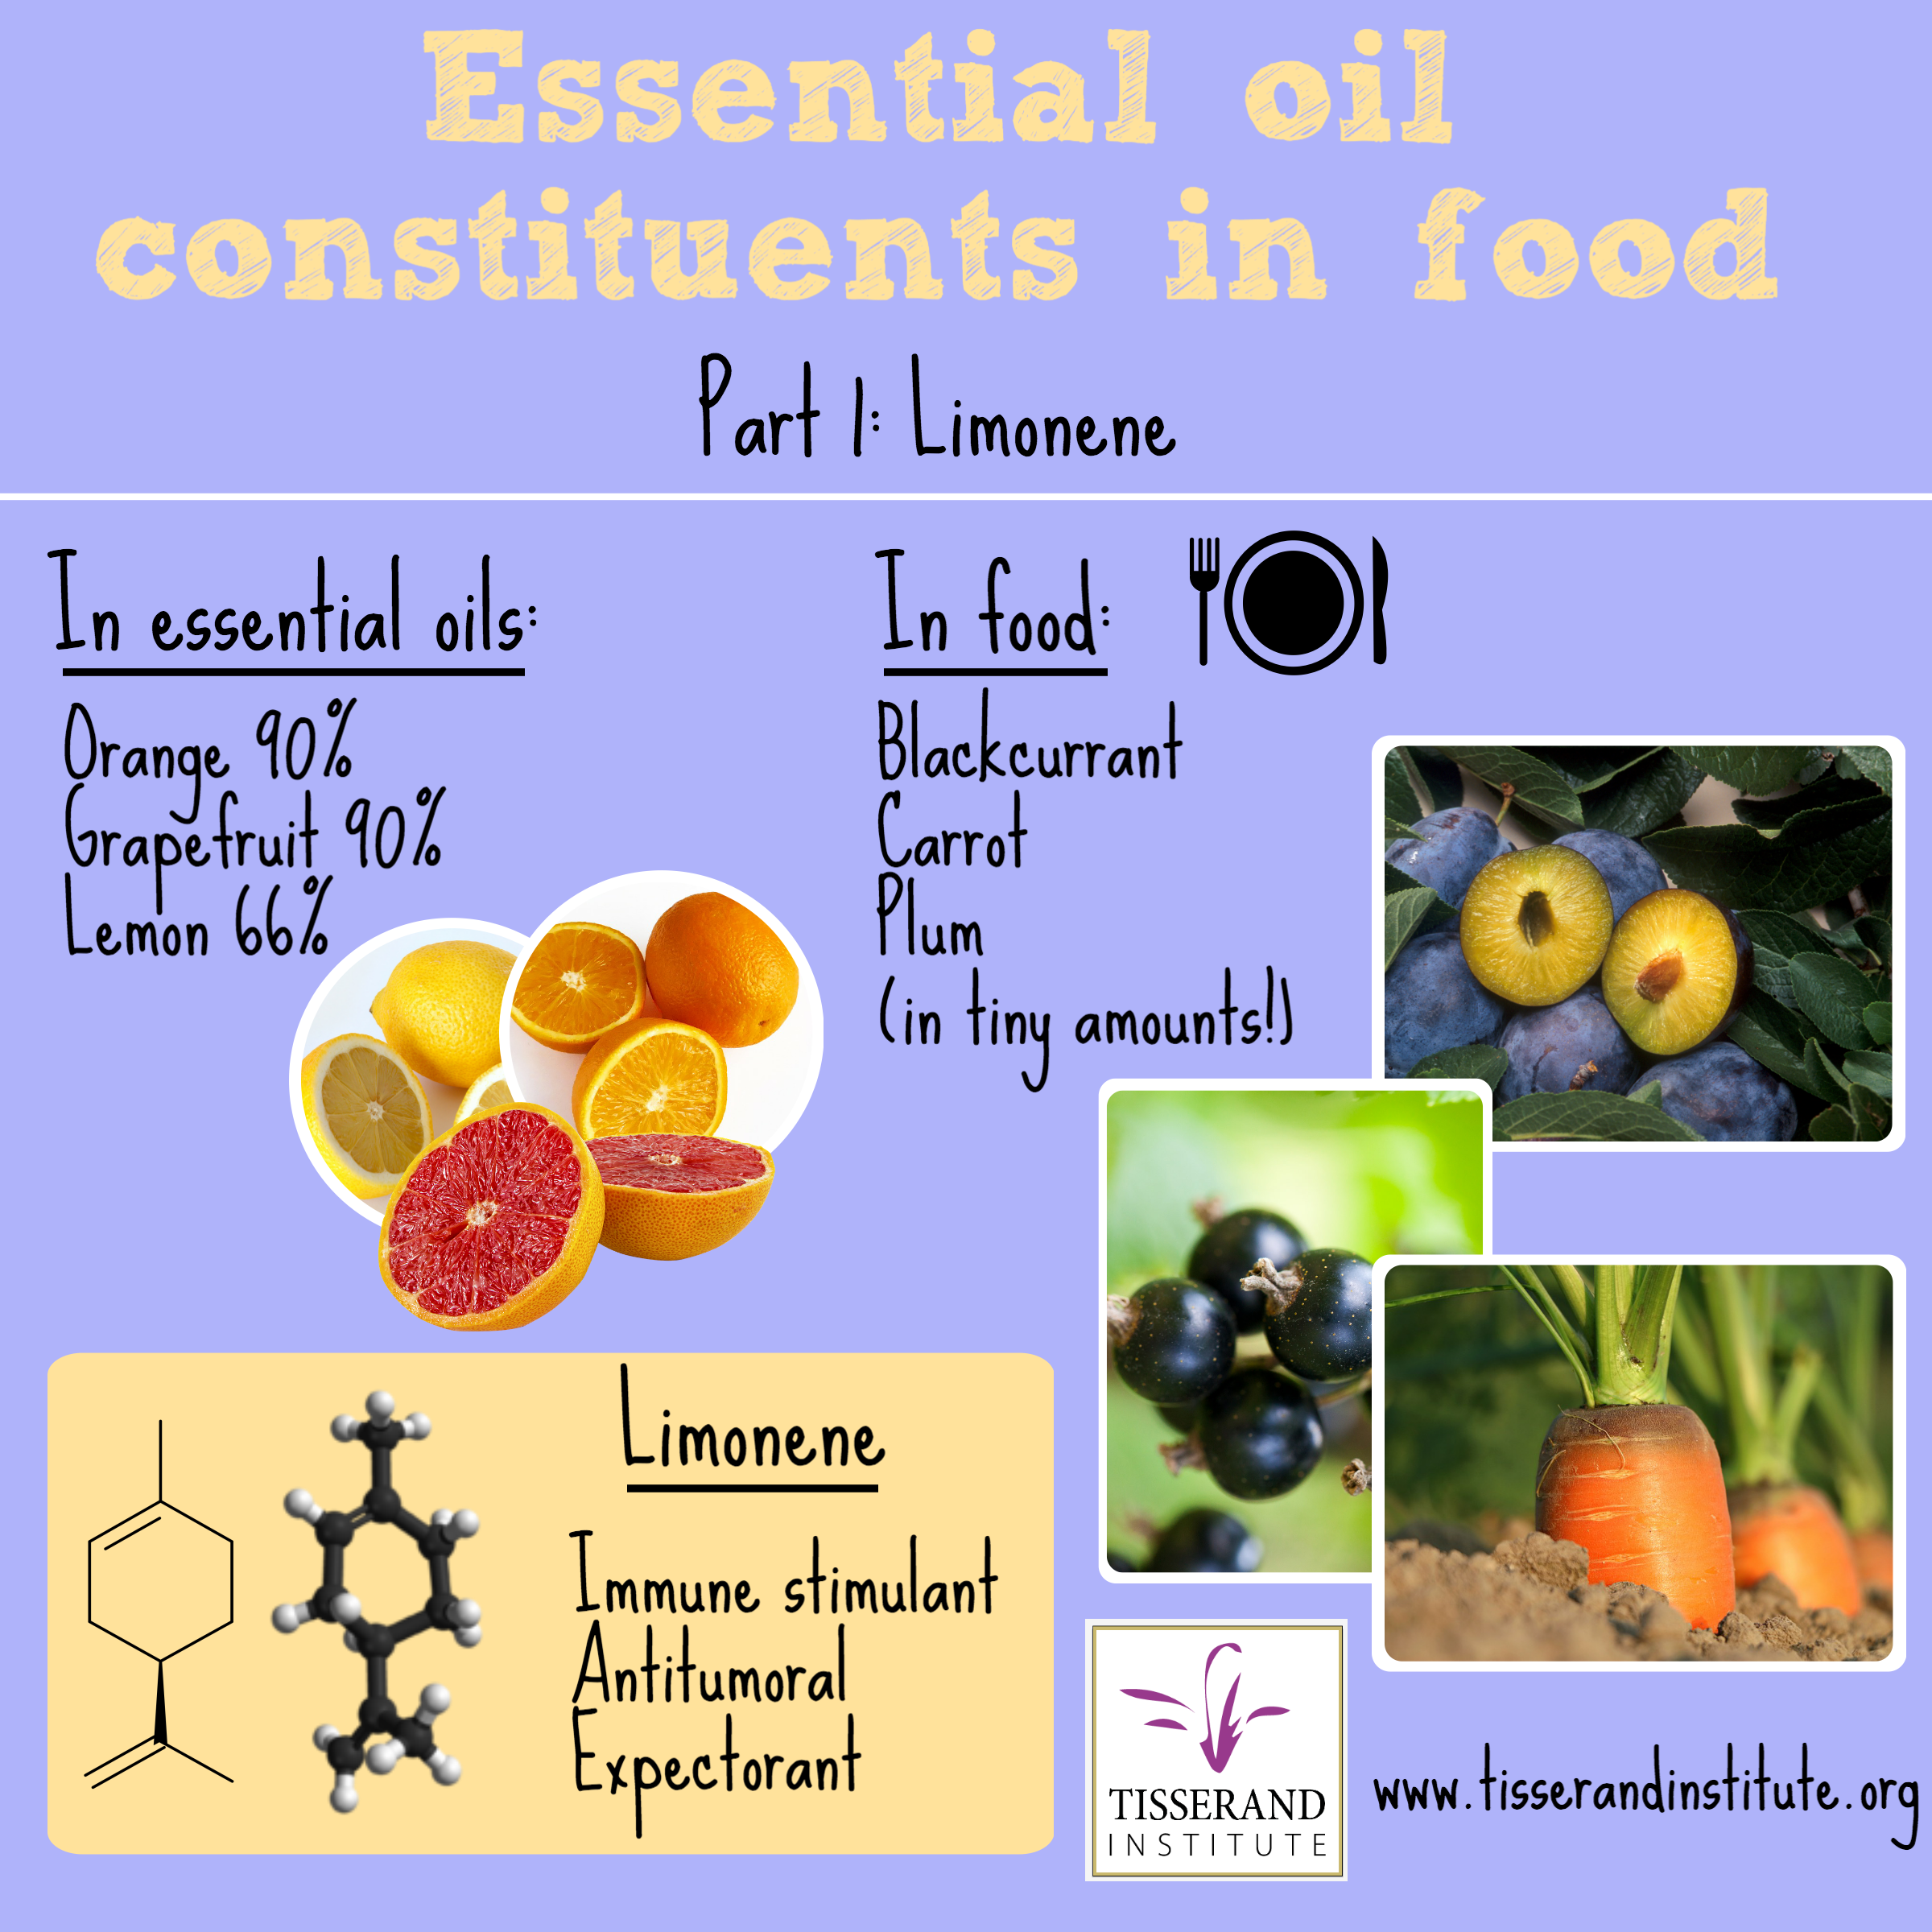 Tisserand Insititute Infographic Essential Oil Constituents in Food: Limonene #TisserandInstitute #Tisserand #Limonenel #EssentialOils